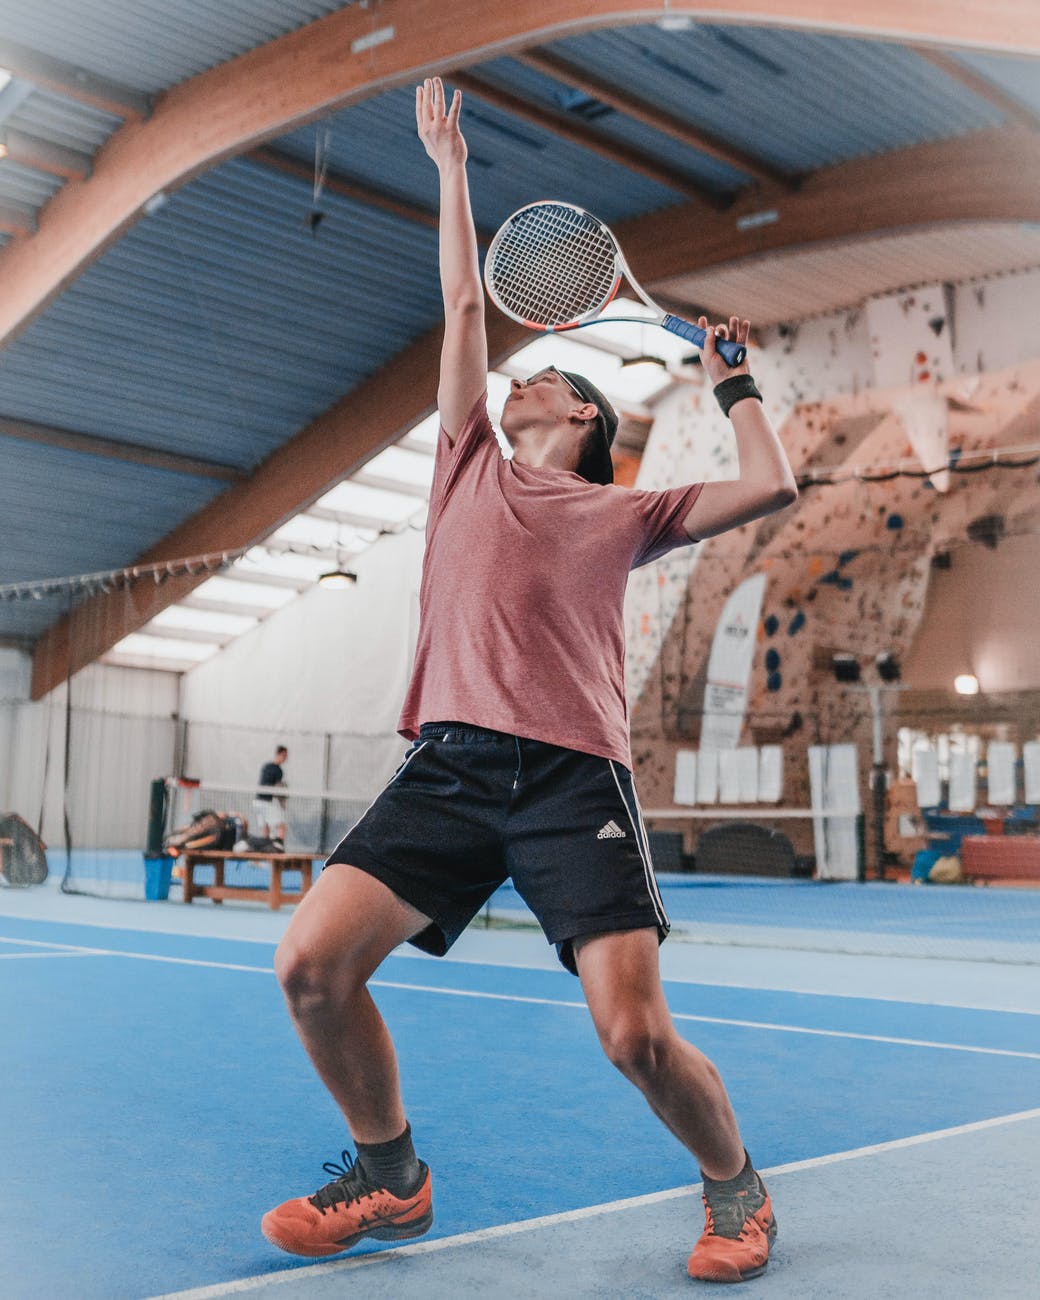 photo of man playing tennis